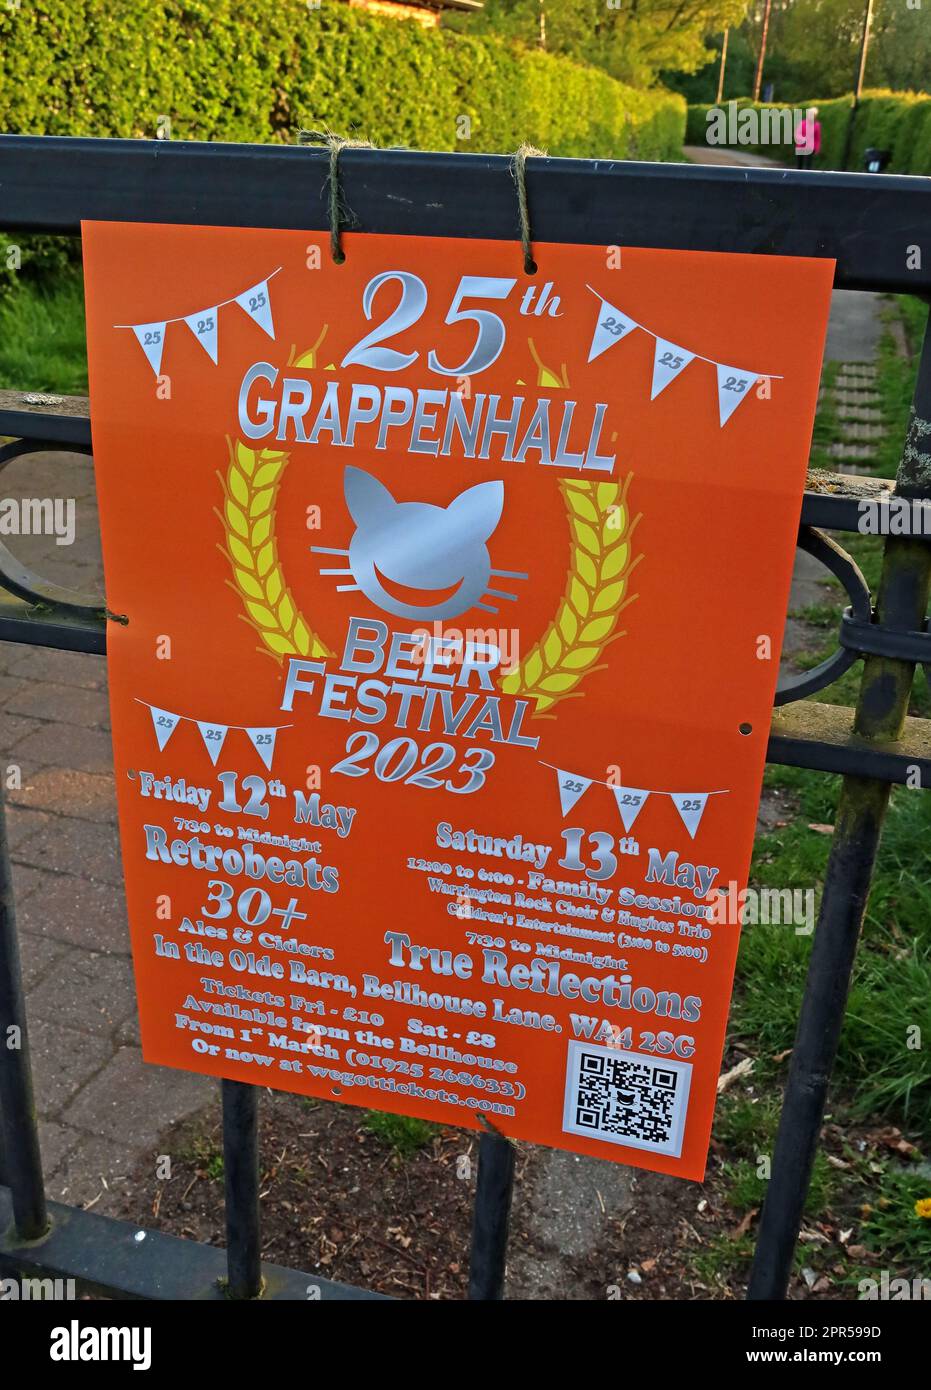 Affiche pour le Grappenhall 25th Beer Festival 2023, 12/05/2023, centre communautaire et jeunesse de Grappenhall, Bellhouse LN, Grappenhall, Warrington WA4 2SG Banque D'Images